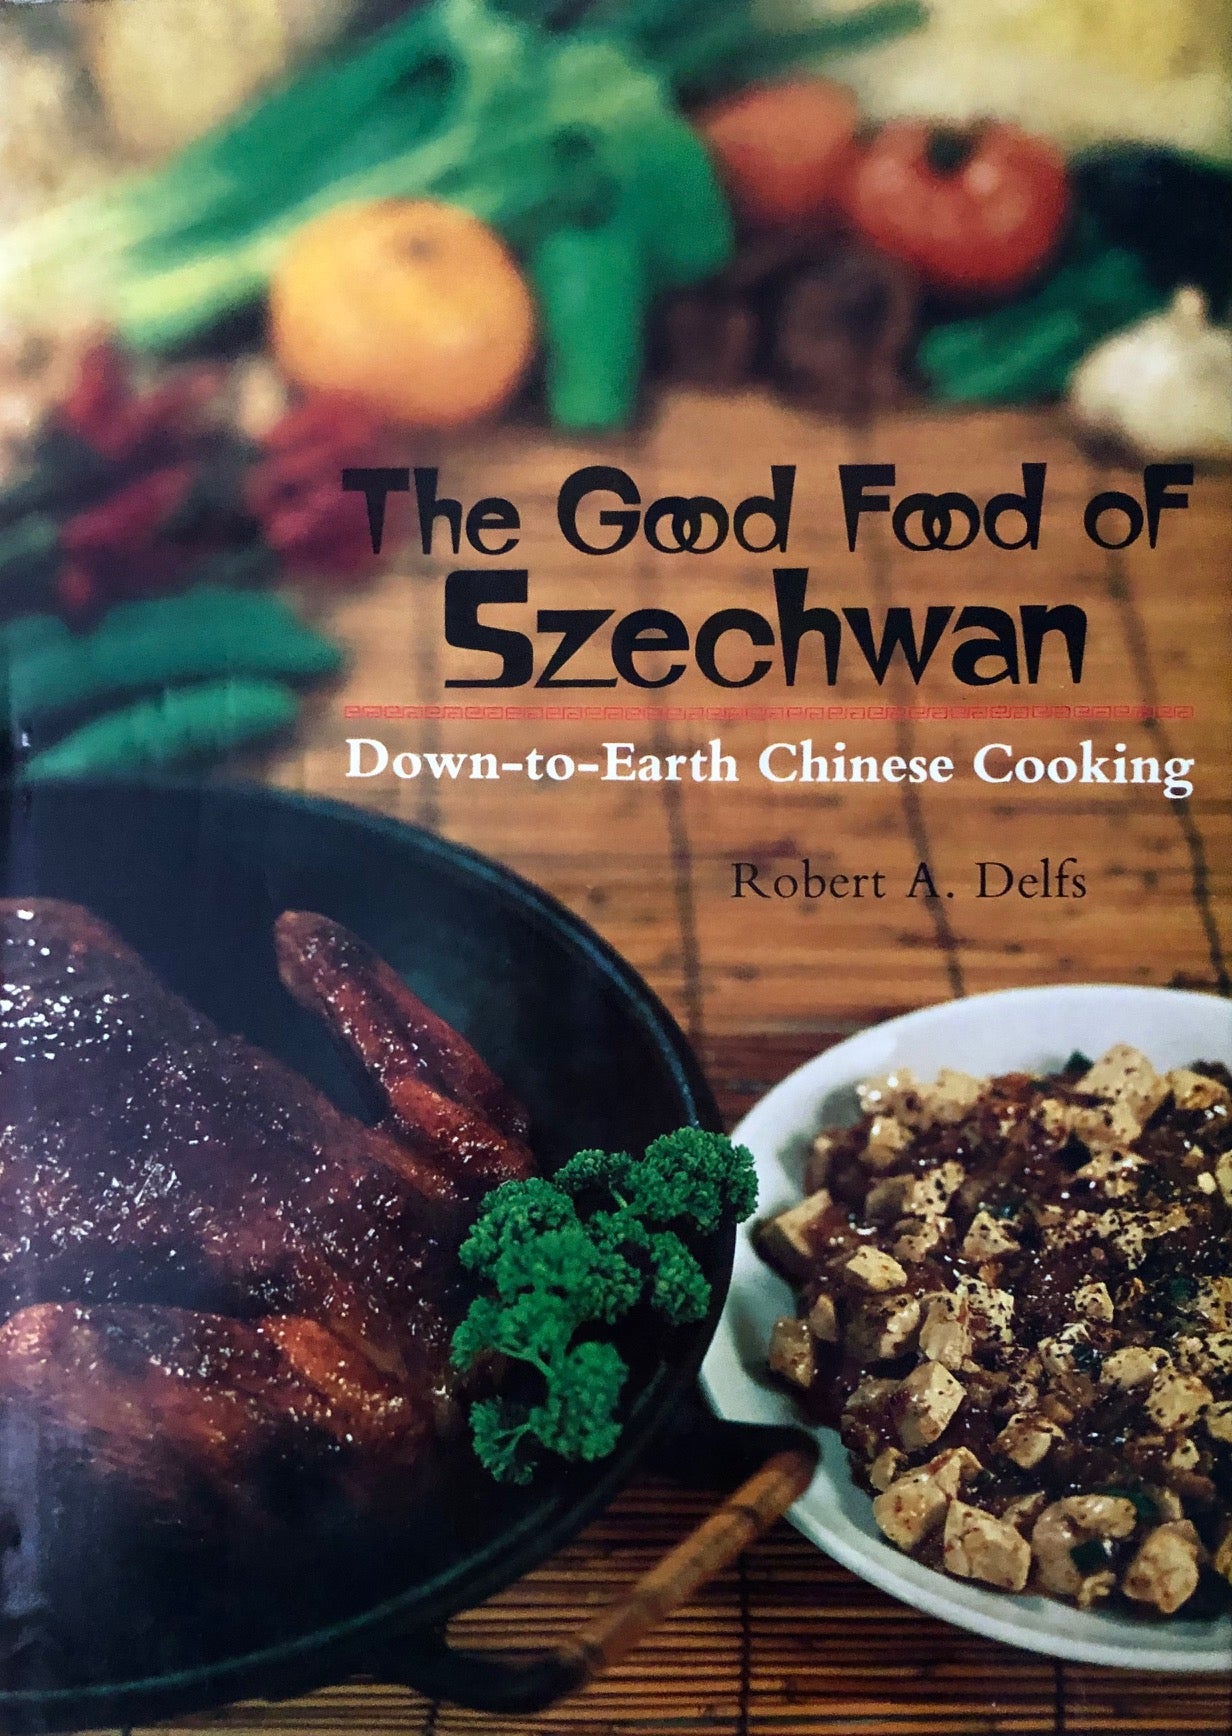 (Chinese) Robert A. Delfs. The Good Food of Szechwan.